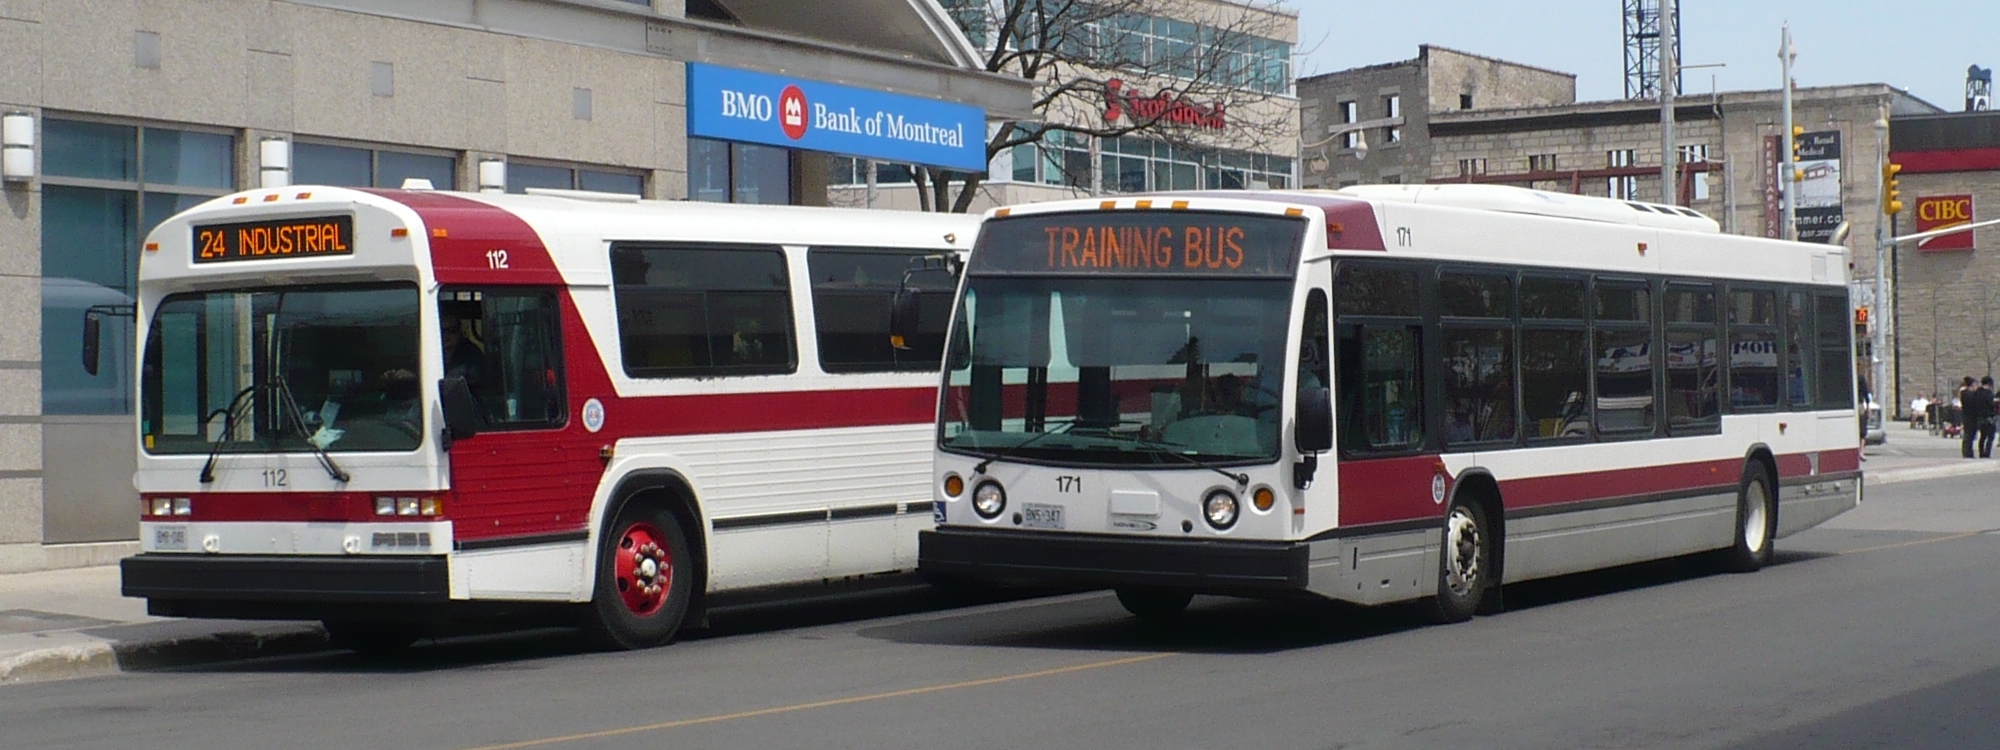 Фирма автобус 1. GM "old-look" Transit Bus. Компания MCI 1990. Телефонная компания MCI 1990.